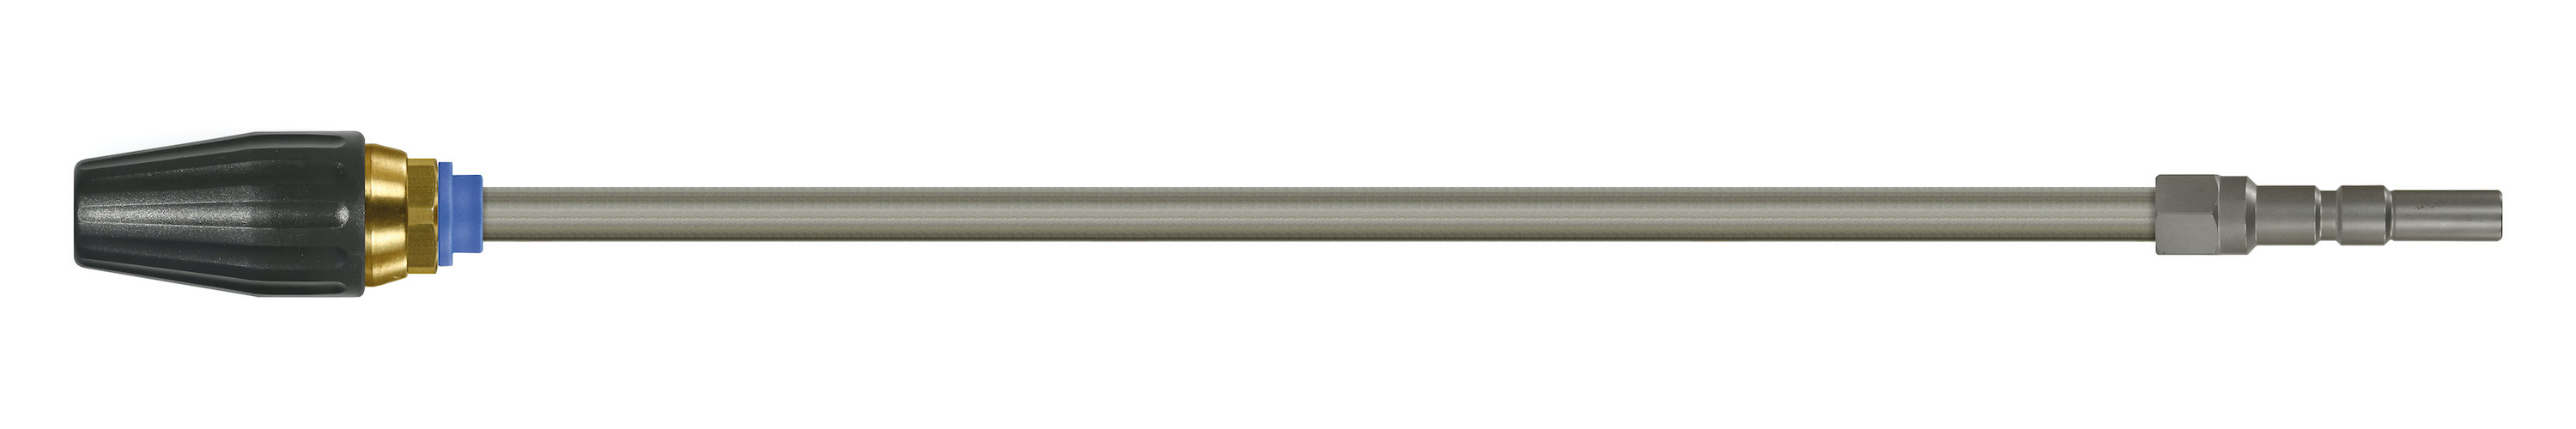 Coupleur KW. Lances tube zingué avec rotabuse ST-357.1. Cône 20°. 100 - 250 bar. Max. 100 °C